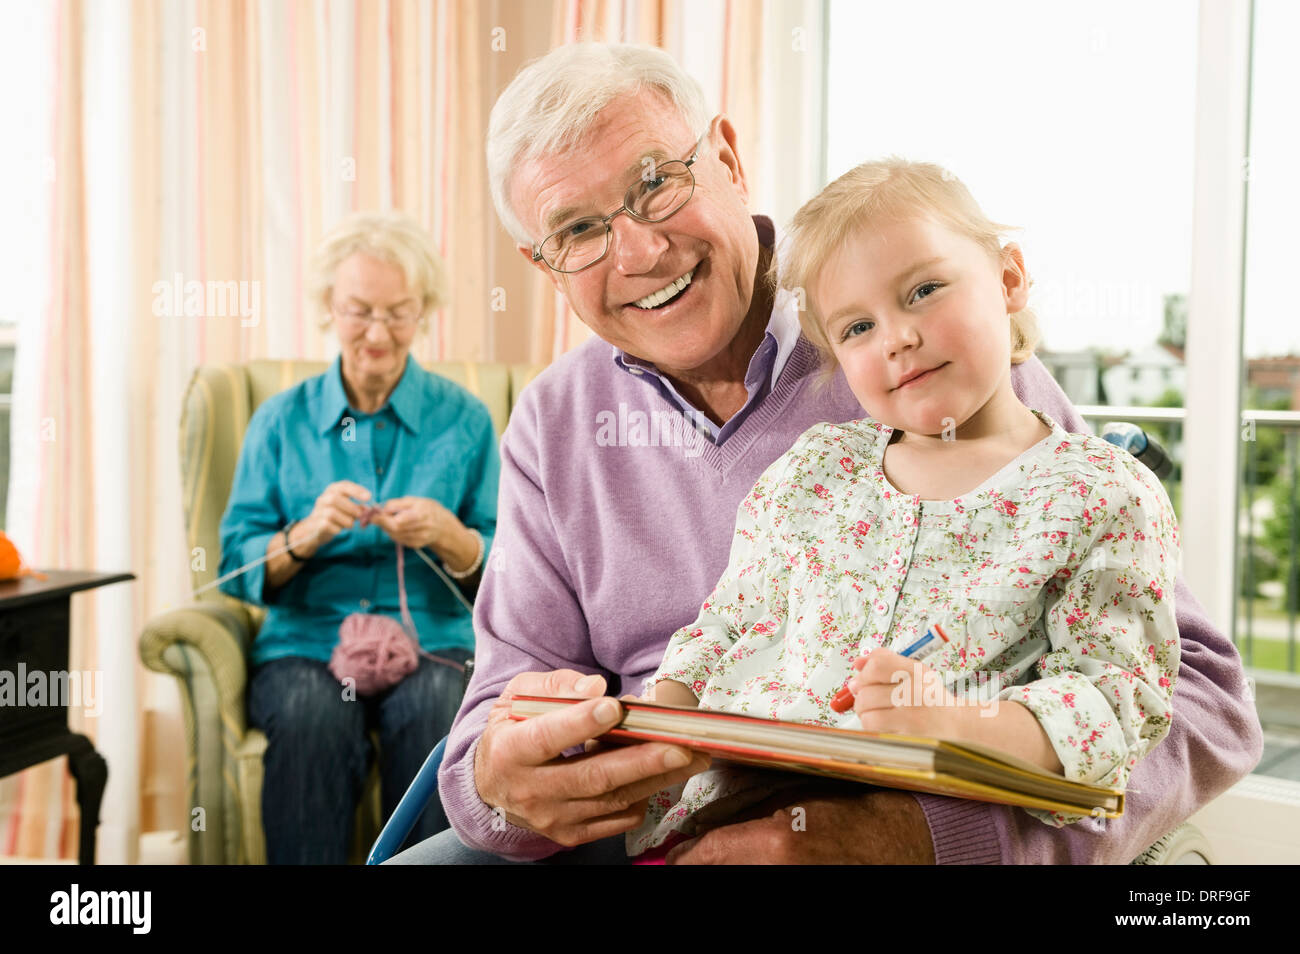 Grand-père et sa petite-fille réunissant, Bavière, Allemagne Banque D'Images